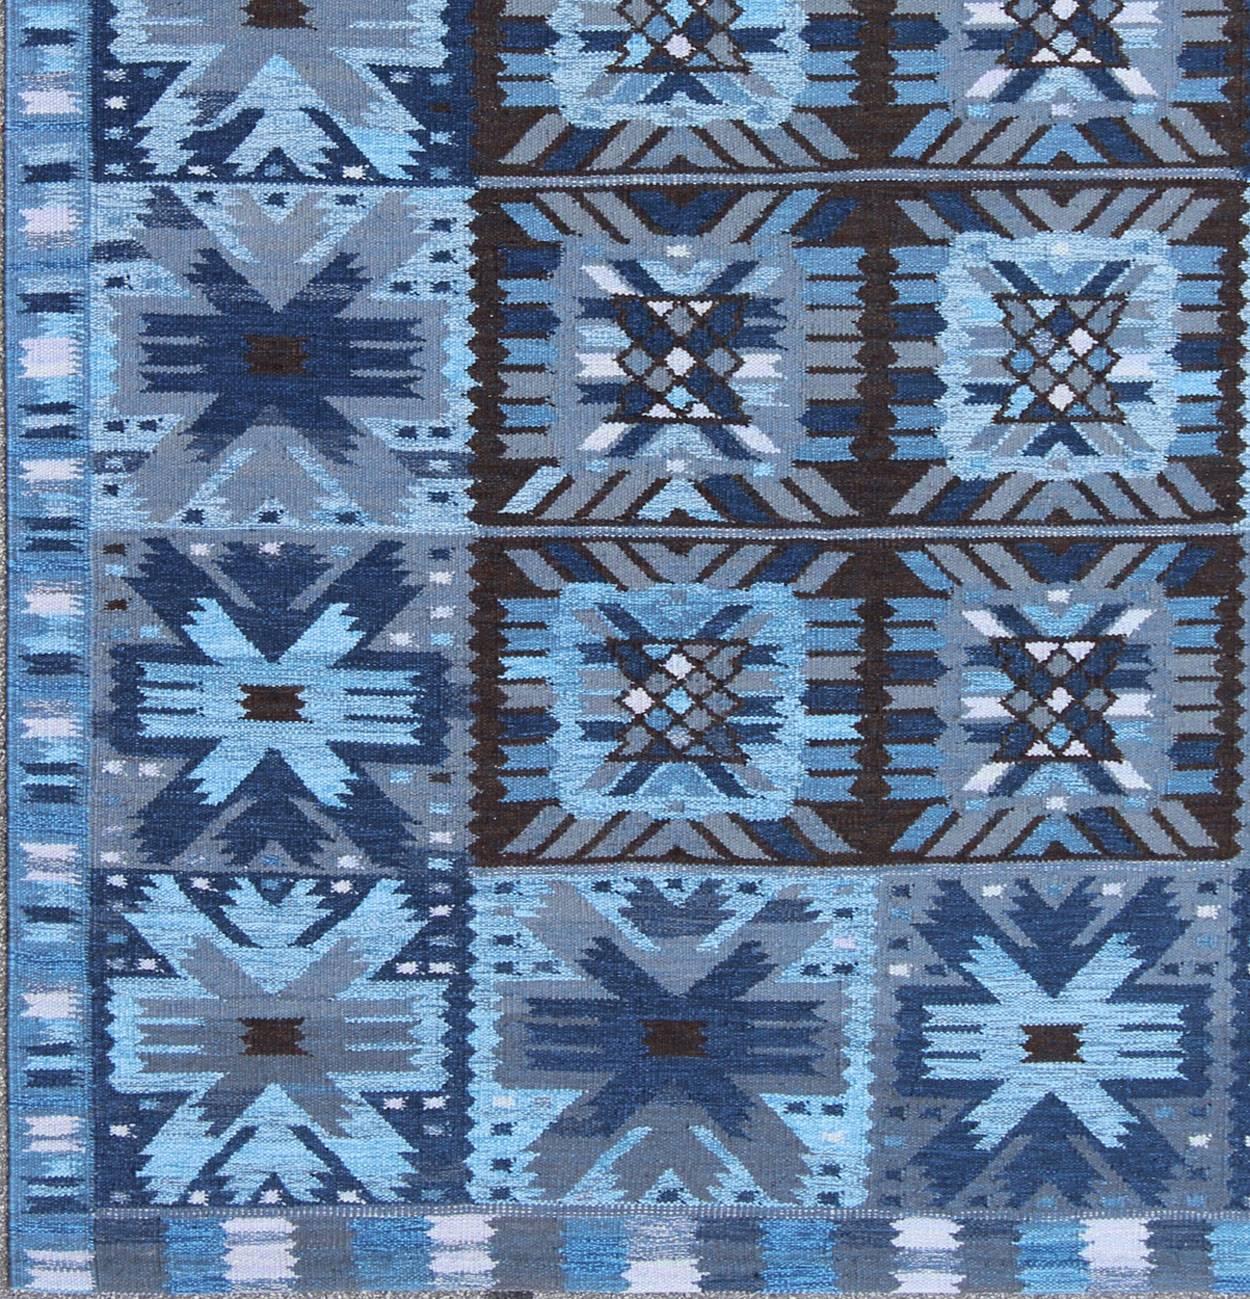  Keivan Woven Arts Zeitgenössischer skandinavischer Flachgewebe-Teppich im schwedischen Design in den Farben Blau und Braun. Dieser Teppich kann individuell gestaltet werden.

Maße: 9' x 12'.

Dieser moderne Flachgewebe-Teppich im skandinavischen